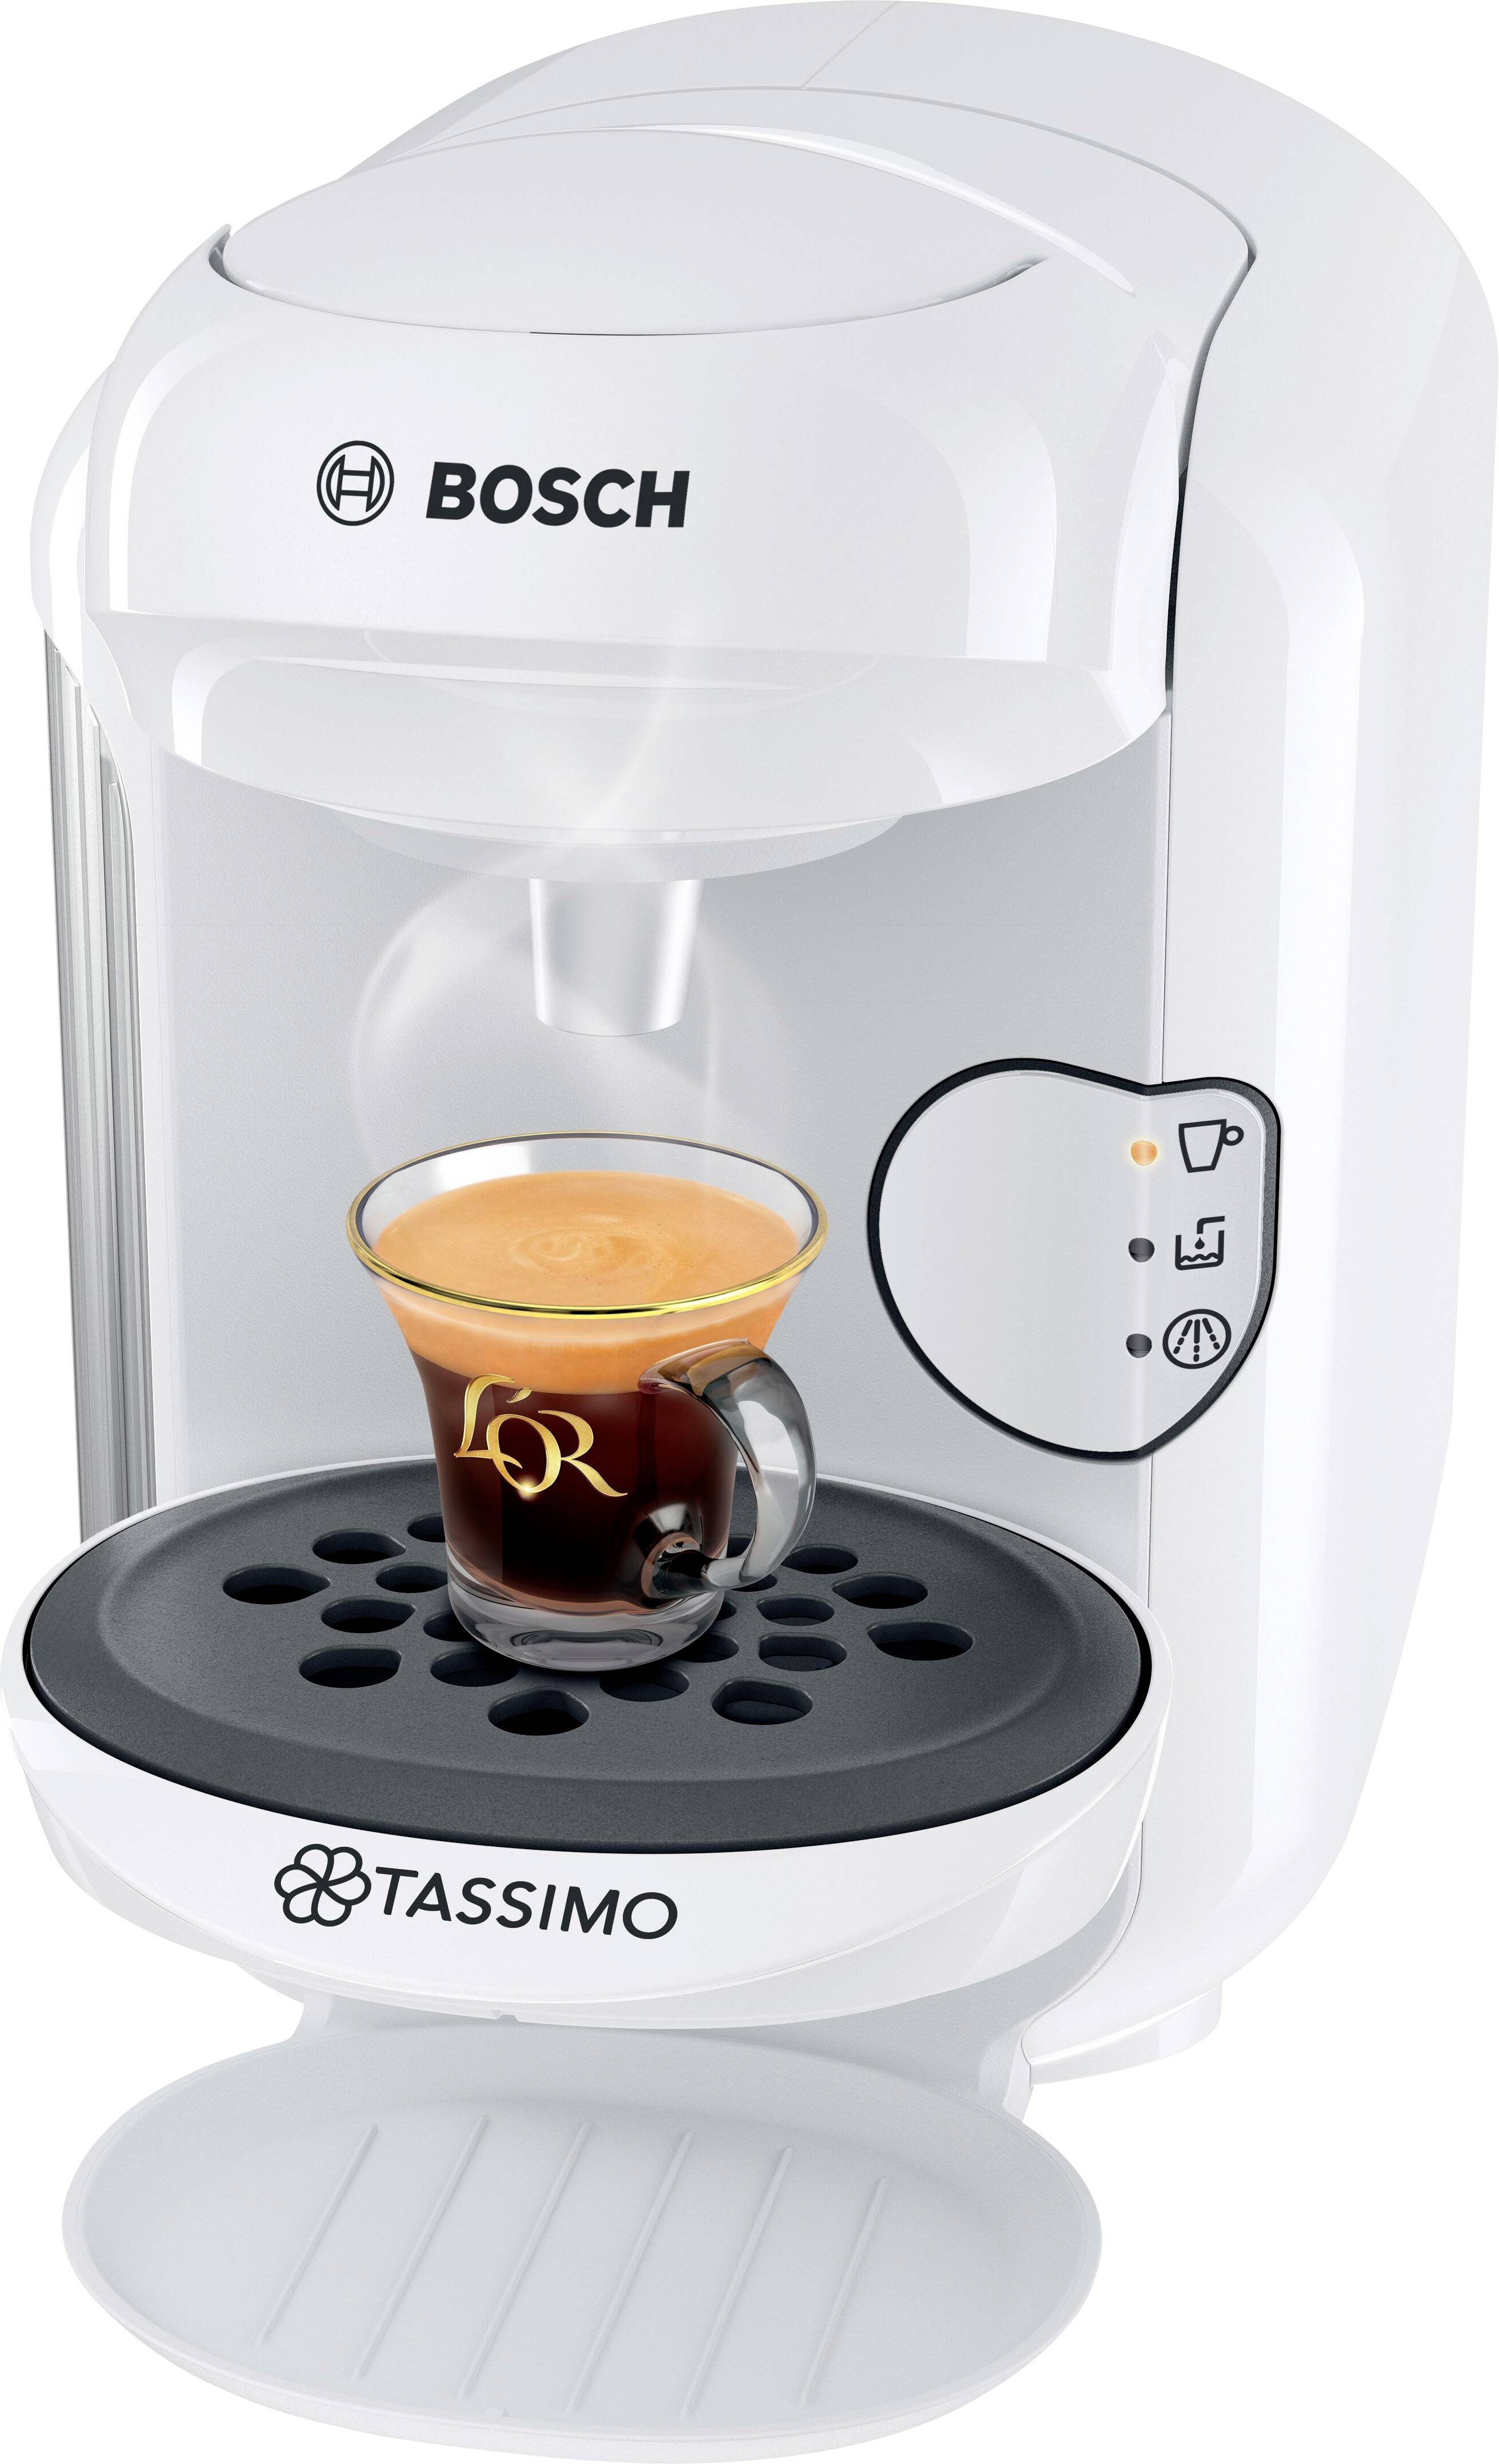 Fenteer Lavabile Riutilizzabile Caffè Capsule Baccelli per Bosch Tassimo di Maglia di Acciaio inossidabile 2 Tipi Disponibili con Spoon 180ml